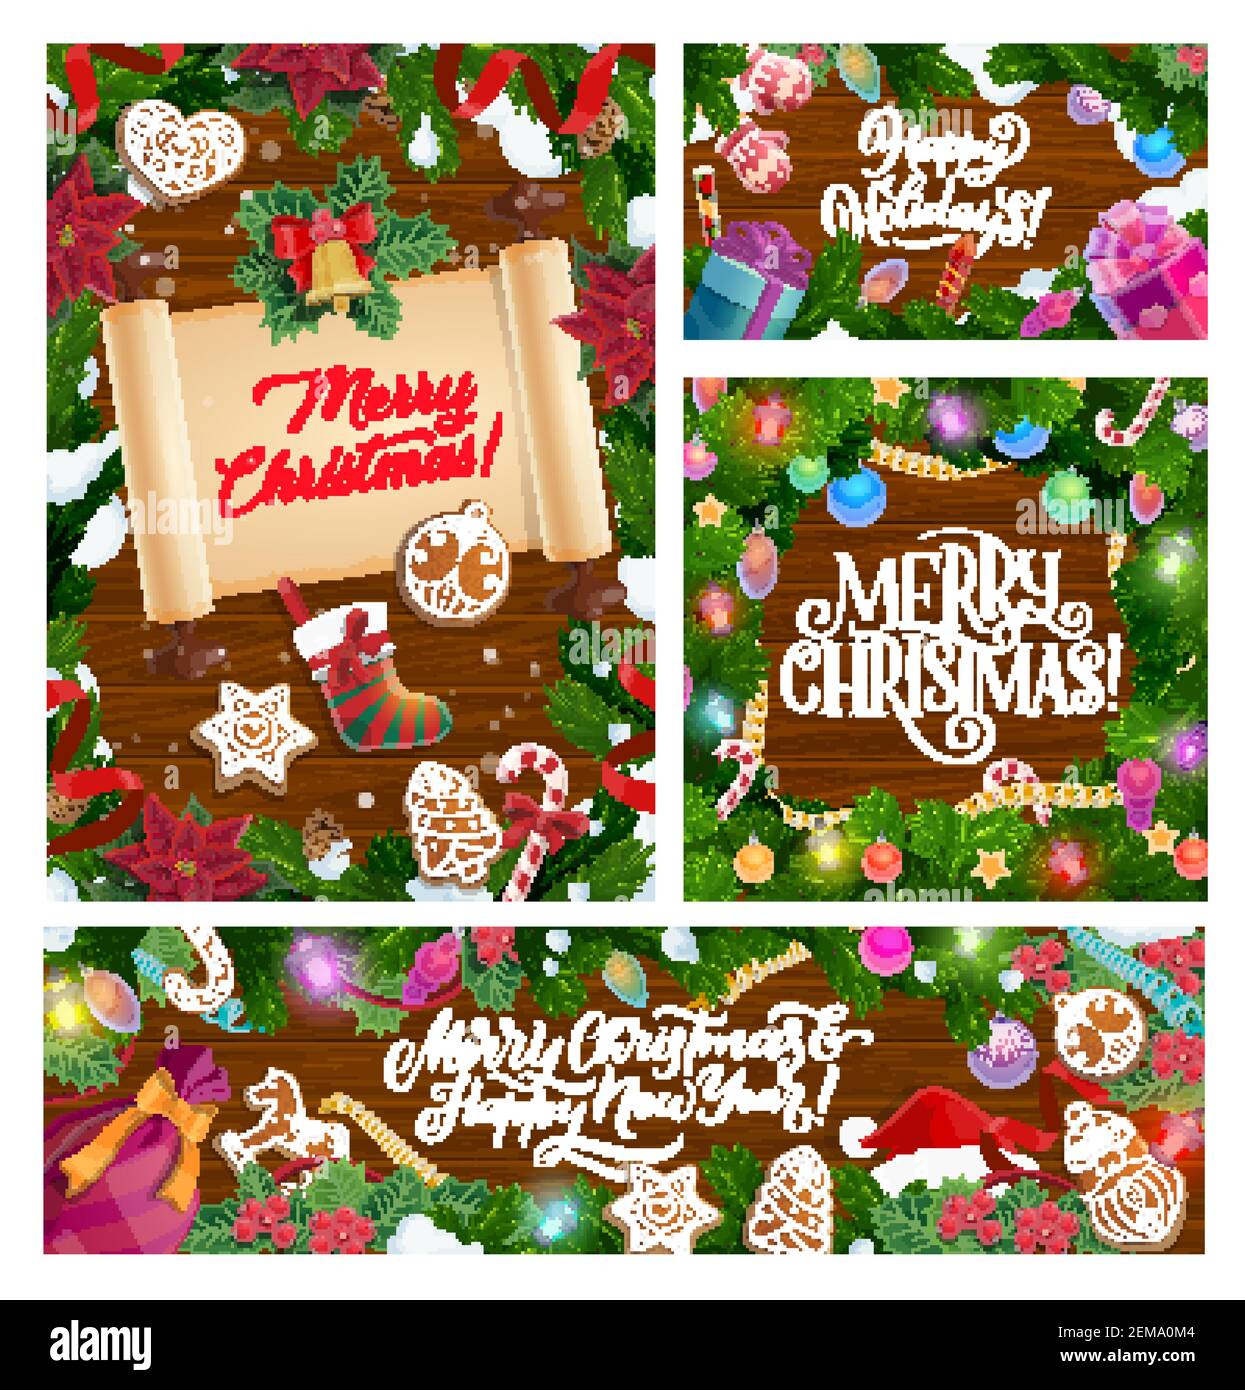 Buon saluto di Natale su rotolo di carta, calligrafia desiderio di Capodanno con le decorazioni dell'albero di Natale. Vector Gift sock, ornamenti e fiocchi di neve confetti wi Illustrazione Vettoriale